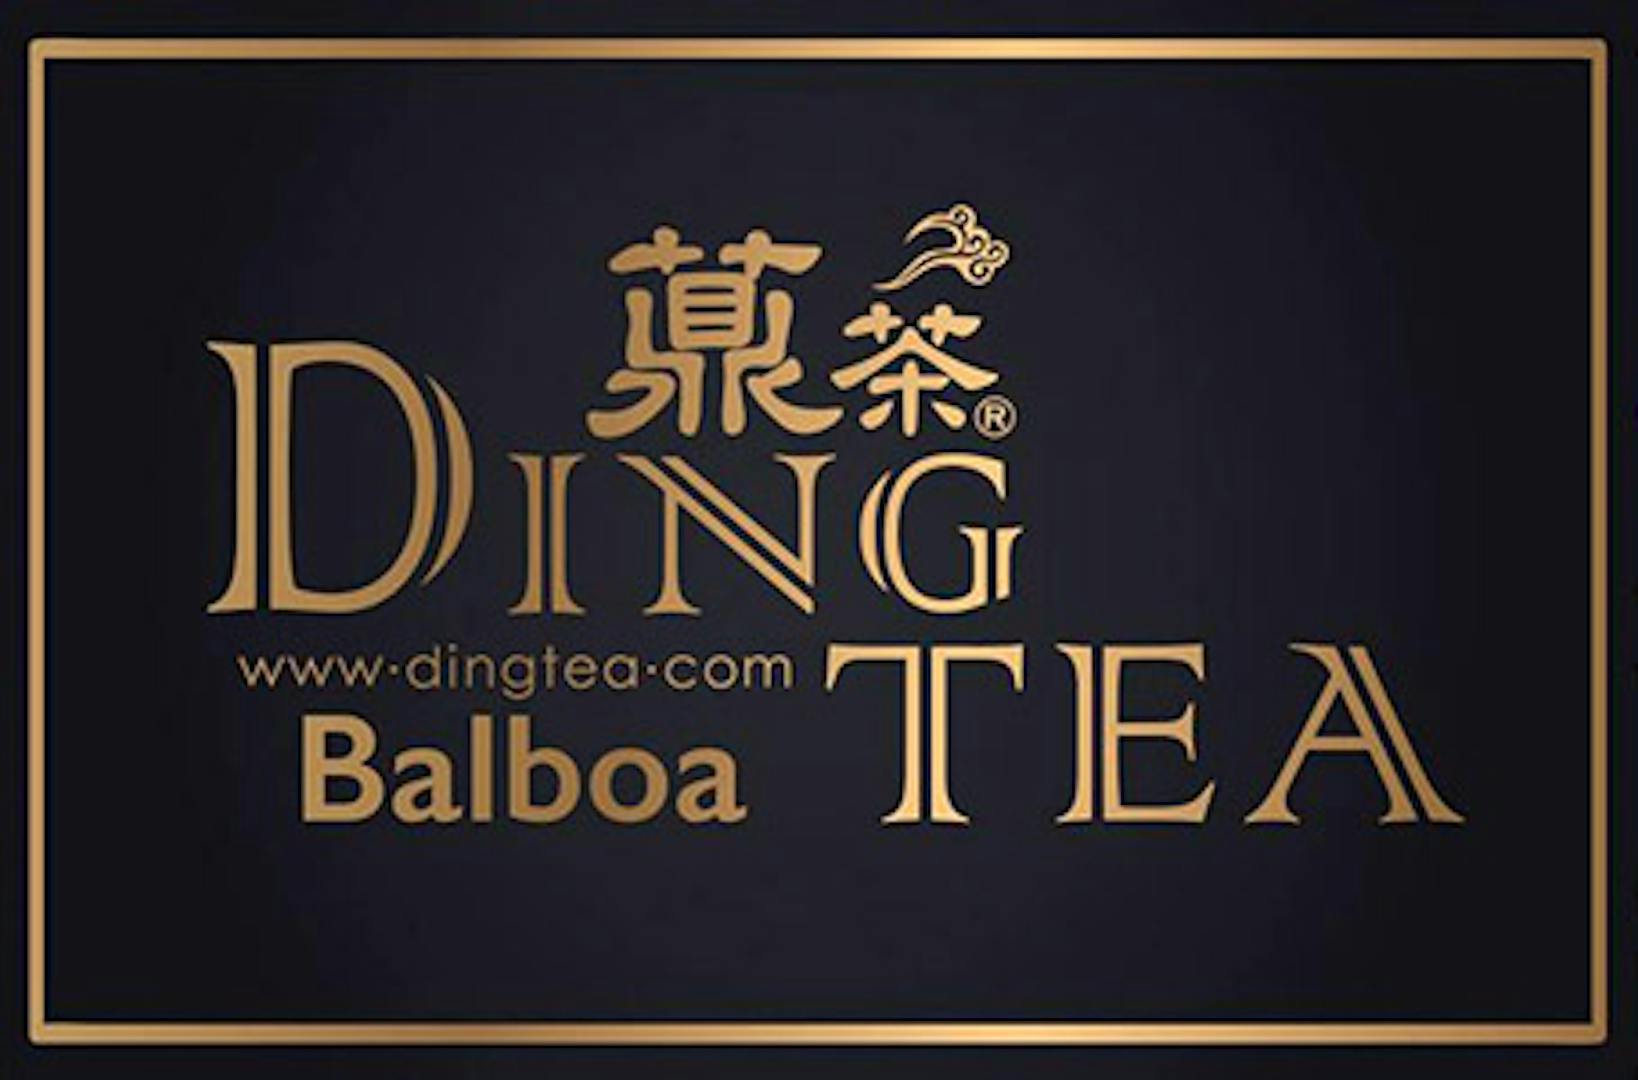 Ding Tea Delivery Menu, Order Online